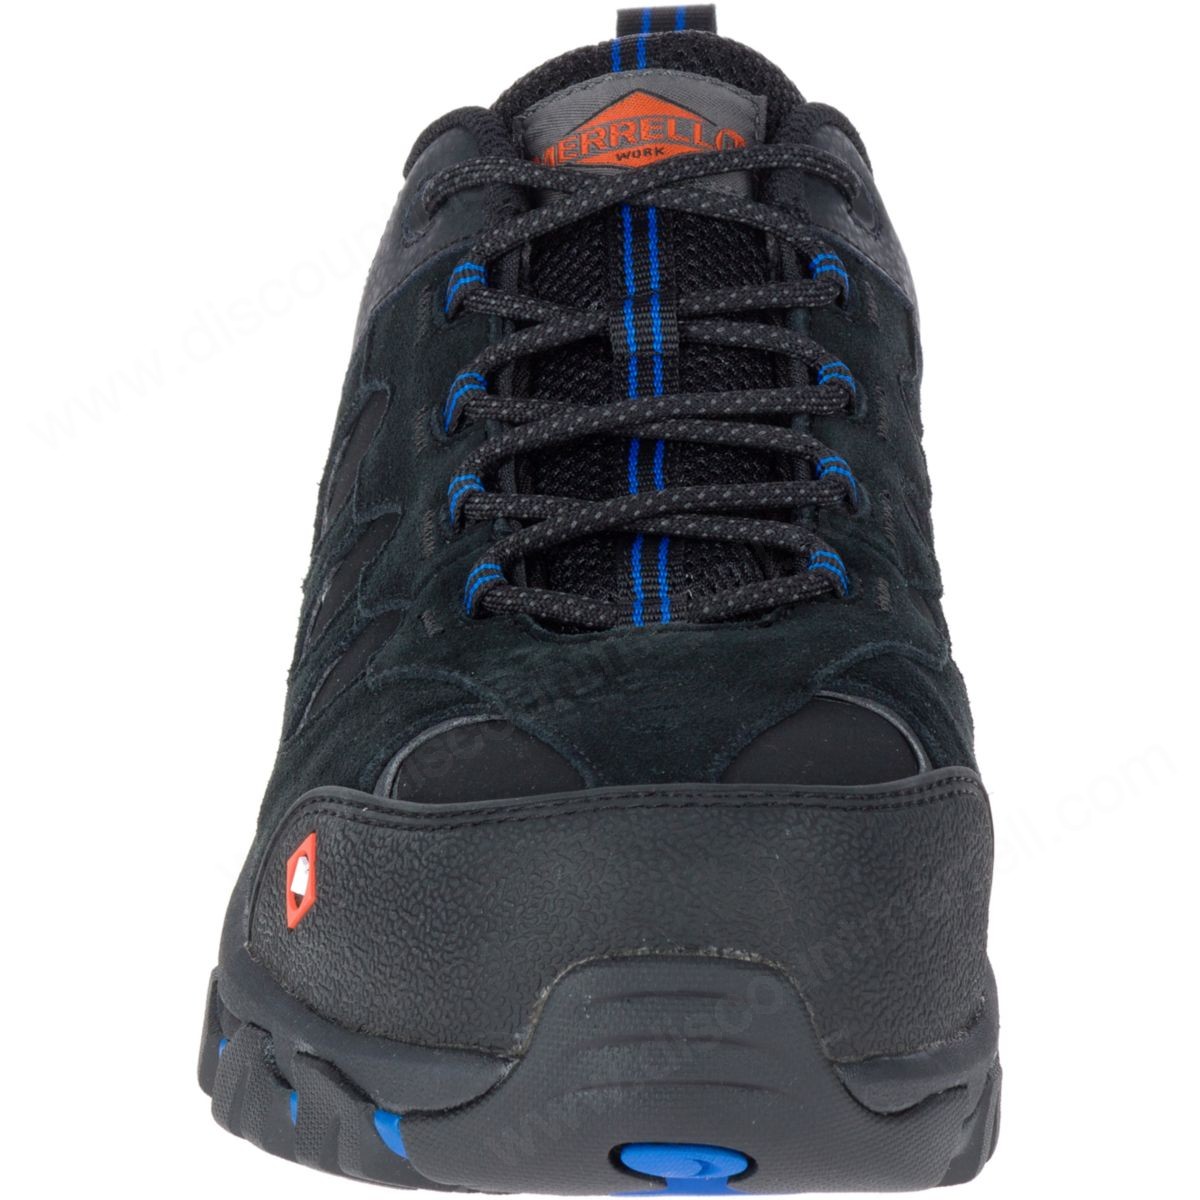 Merrell Man's Ridgepass Bolt Comp Toe Work Sneaker Wide Width Black - -4